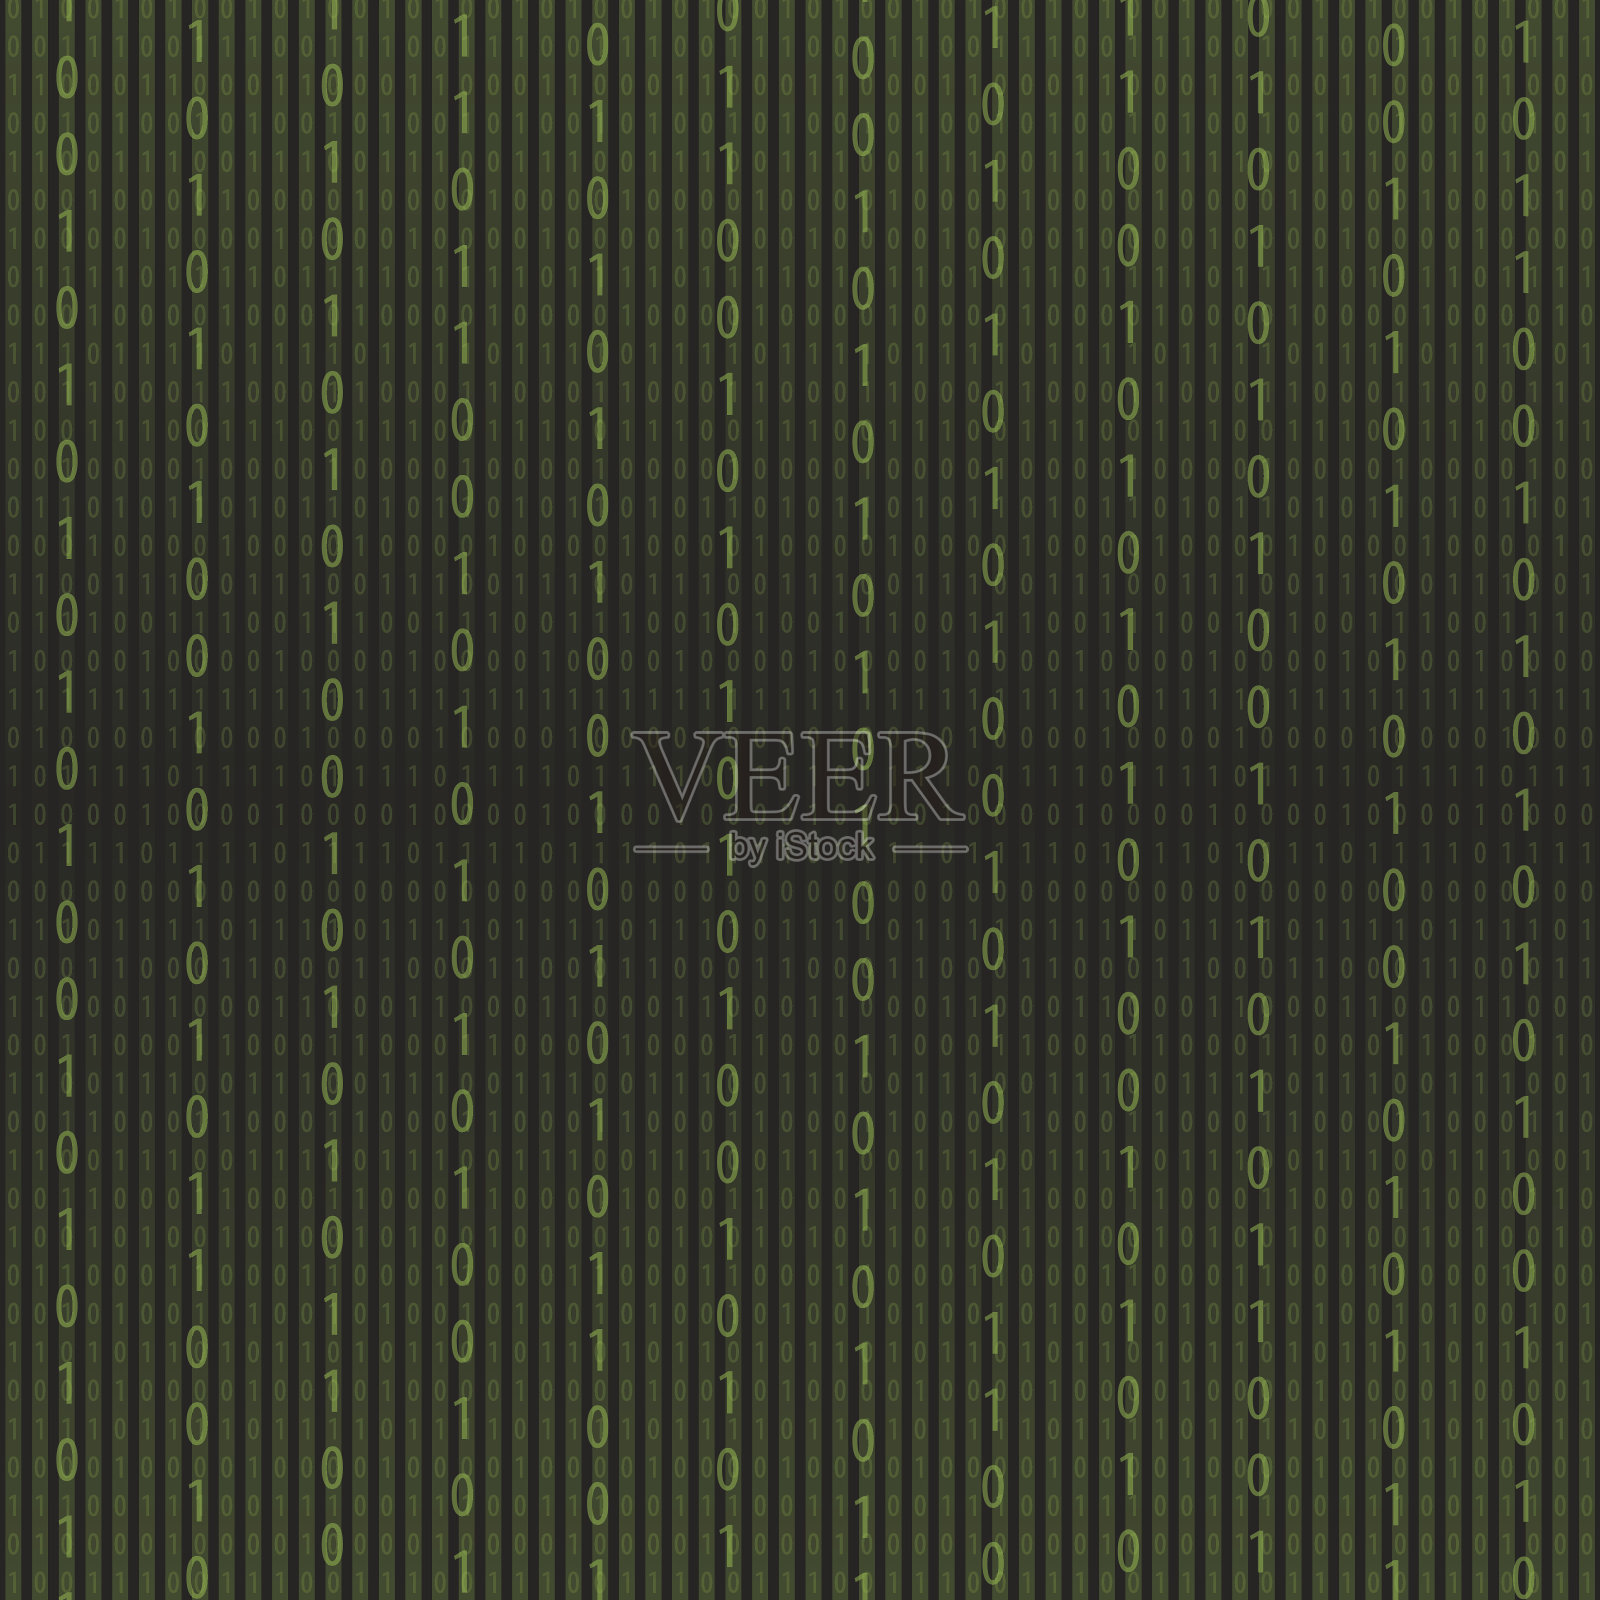 摘要绿色矩阵背景。二进制计算机代码。编码插画图片素材